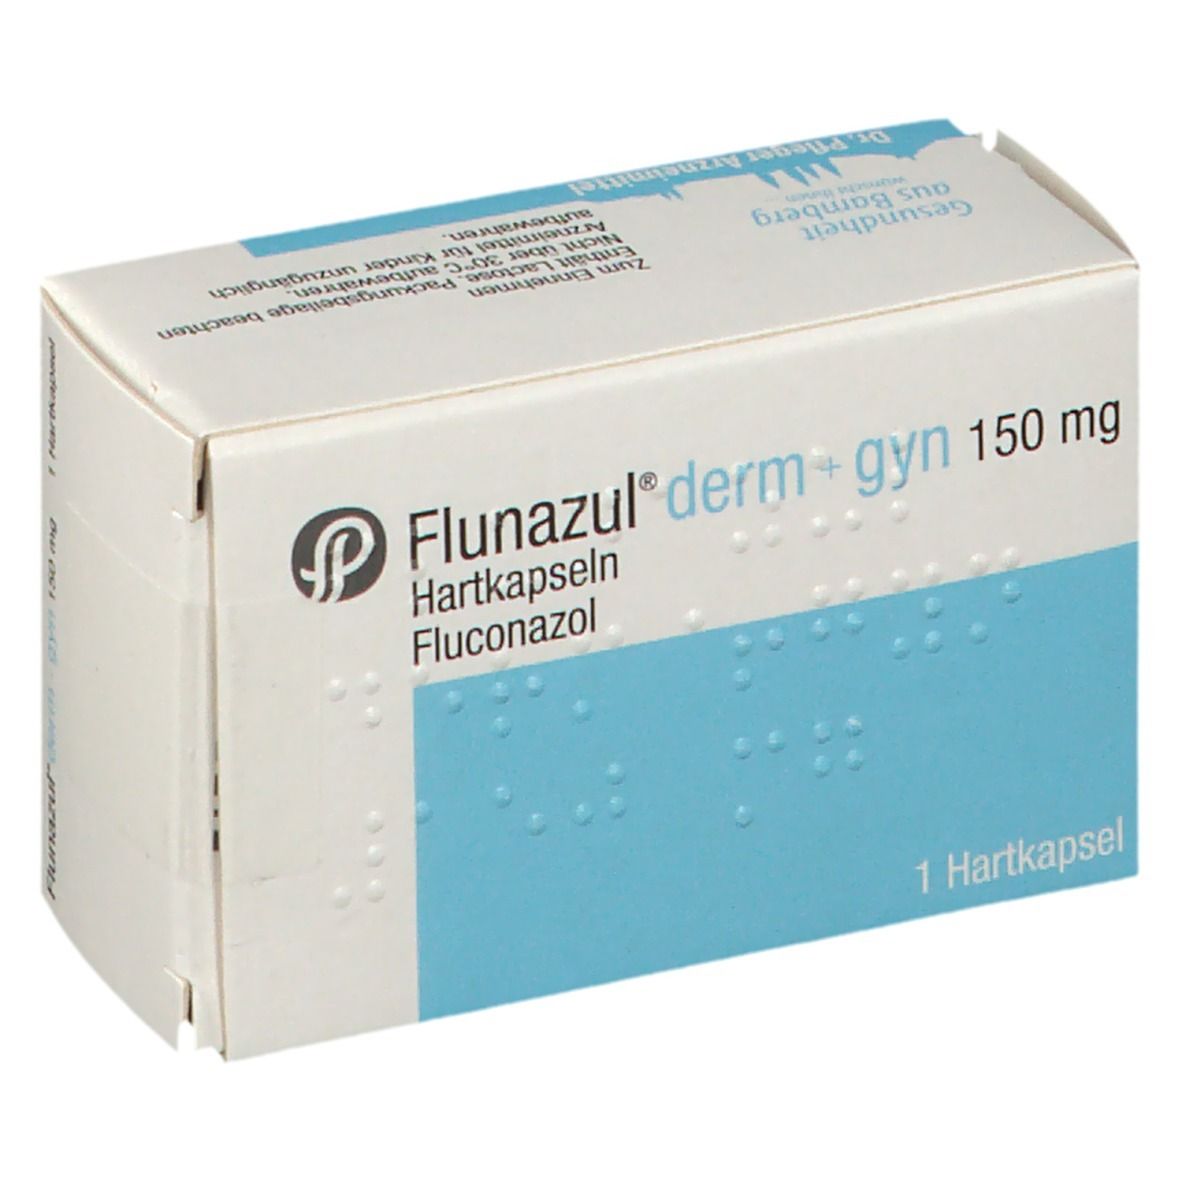 Flunazul® derm + gyn 150 mg